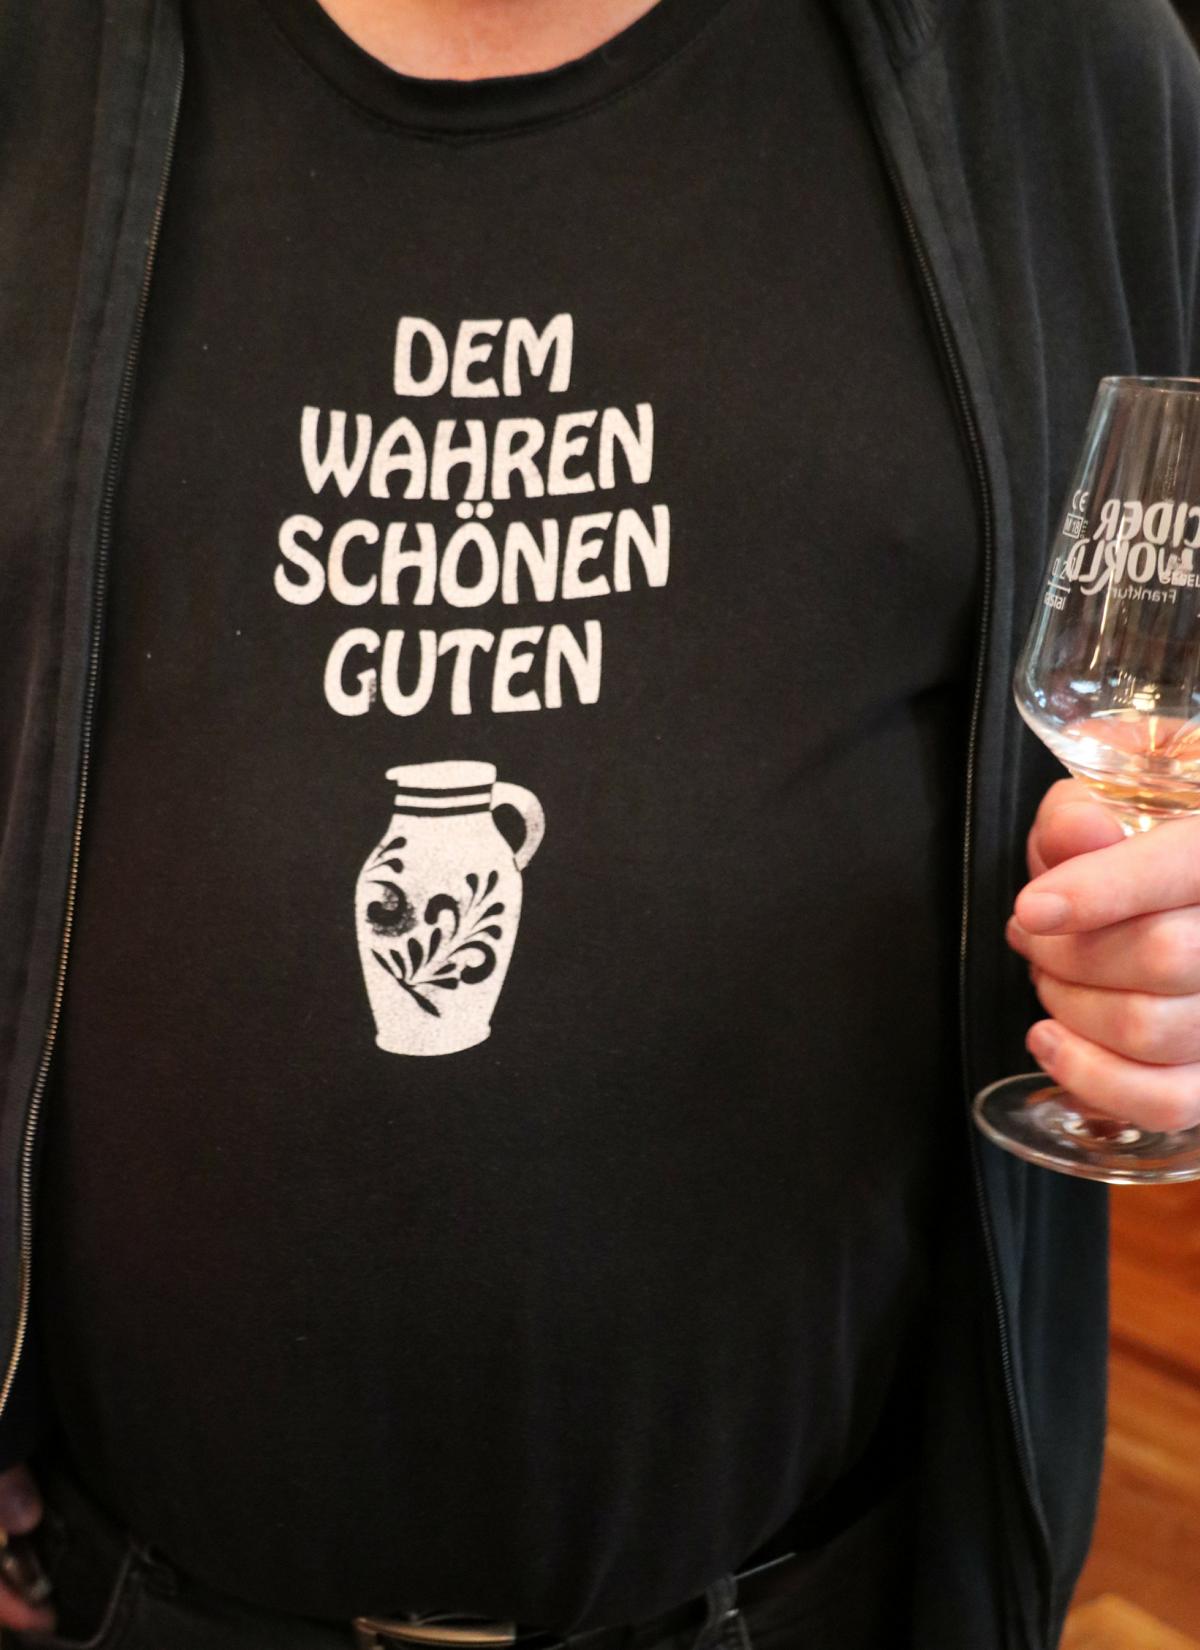  Cider World 24 - Internationale Frankfurter Apfelweinmesse.  FOTOS: < >< >  2024-04-27 Cider World 24  - Int. Frankfurter Apfelweinmesse  < > 